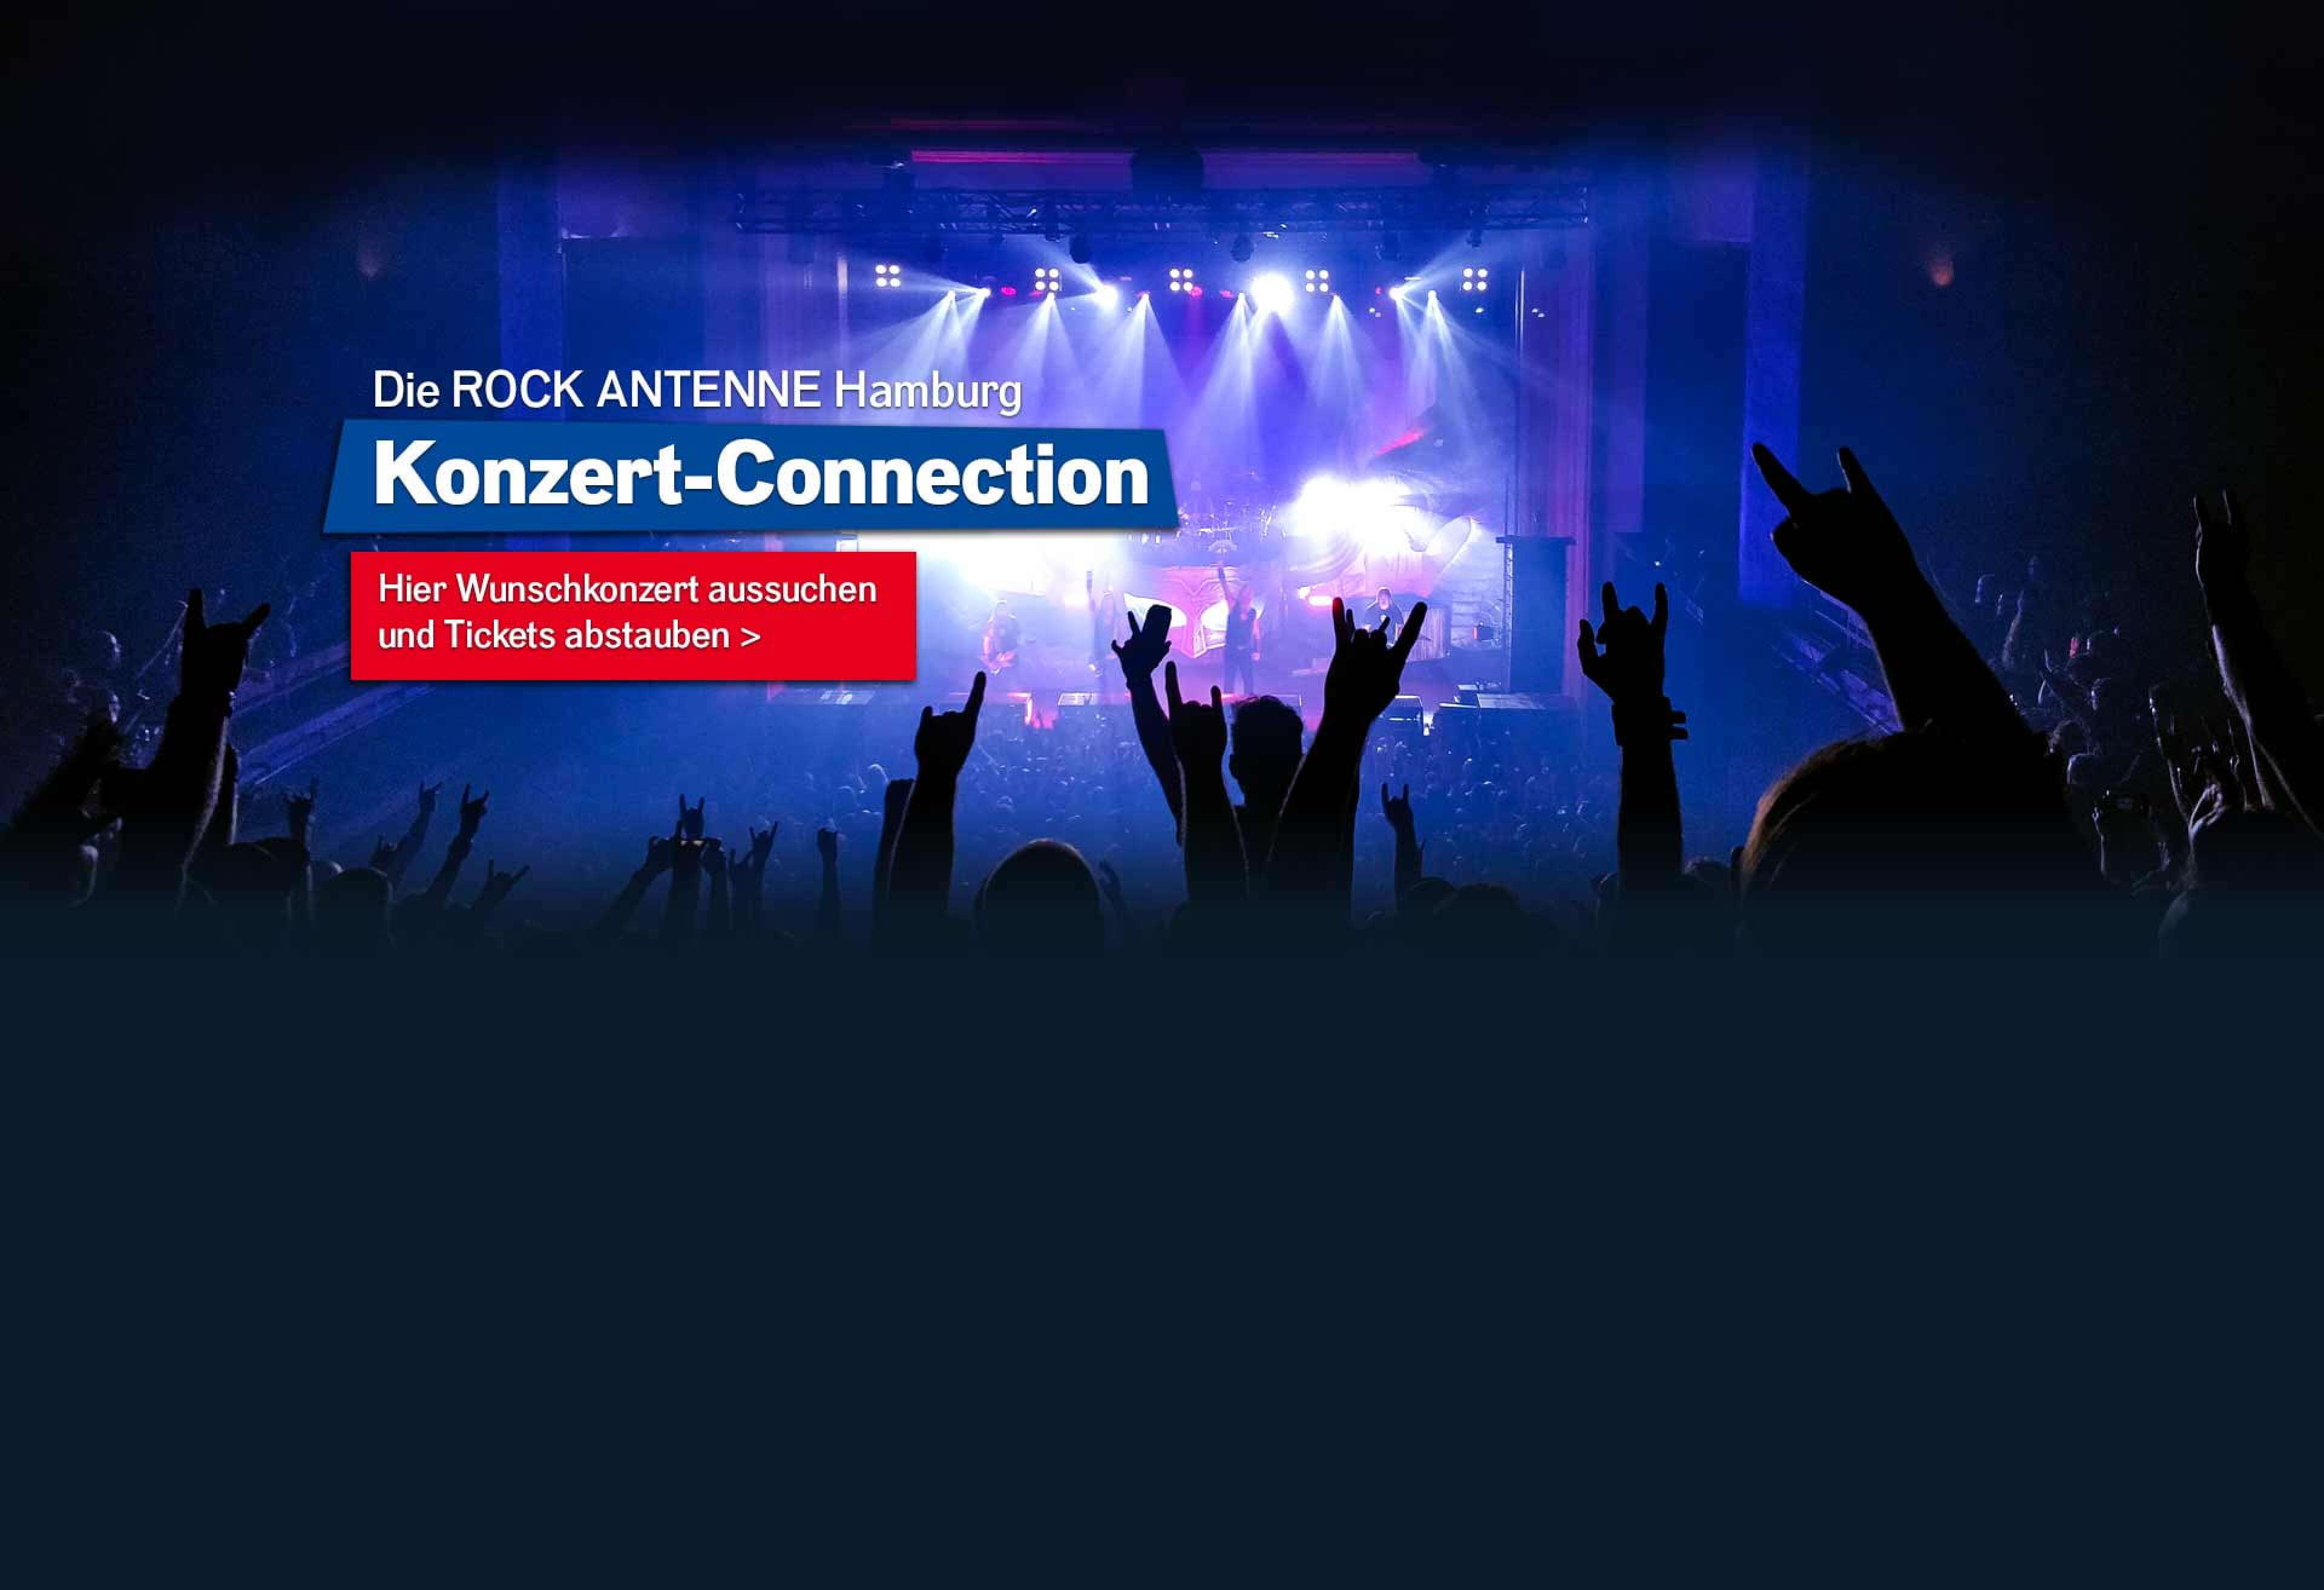 Bild von Konzertbesuchern mit Blick auf die Bühne, Text "Die ROCK ANTENNE Hamburg Konzert Connection - hier Wunschkonzert aussuchen und Tickets abstauben"